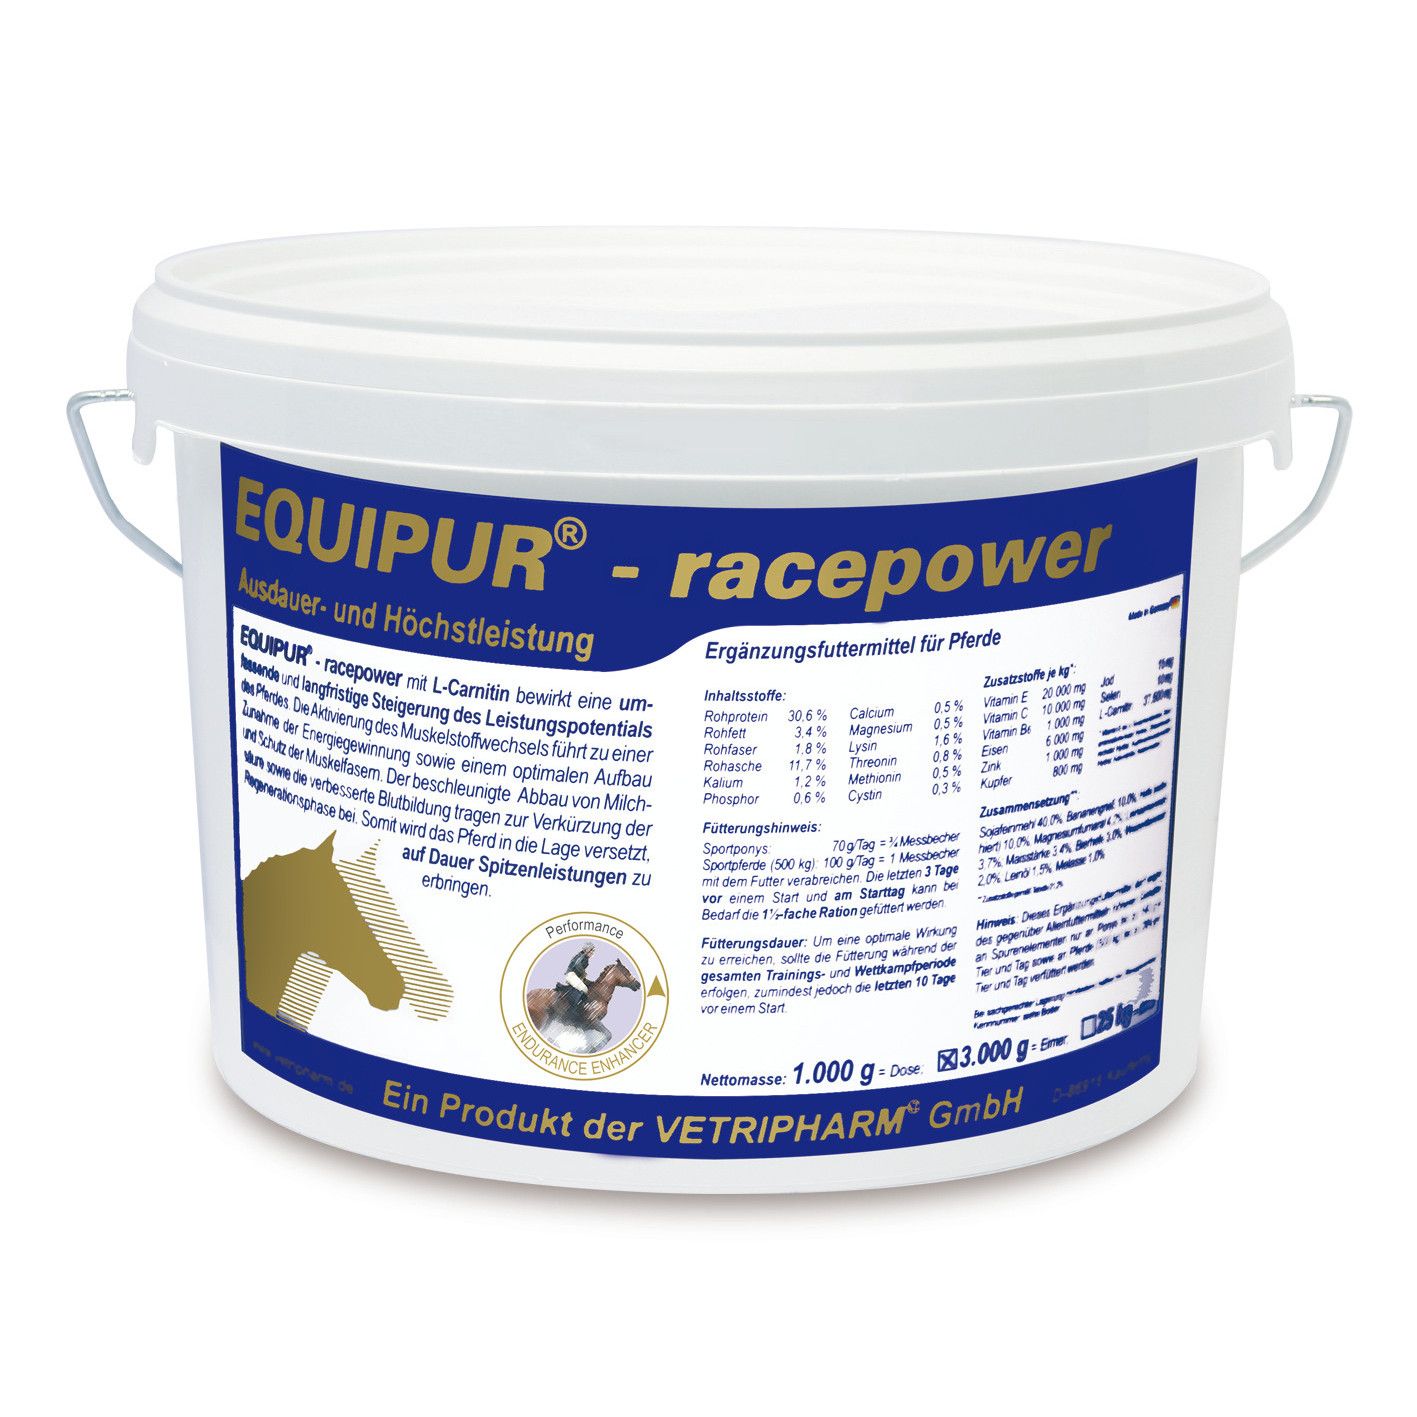 Vetripharm Equipur racepower